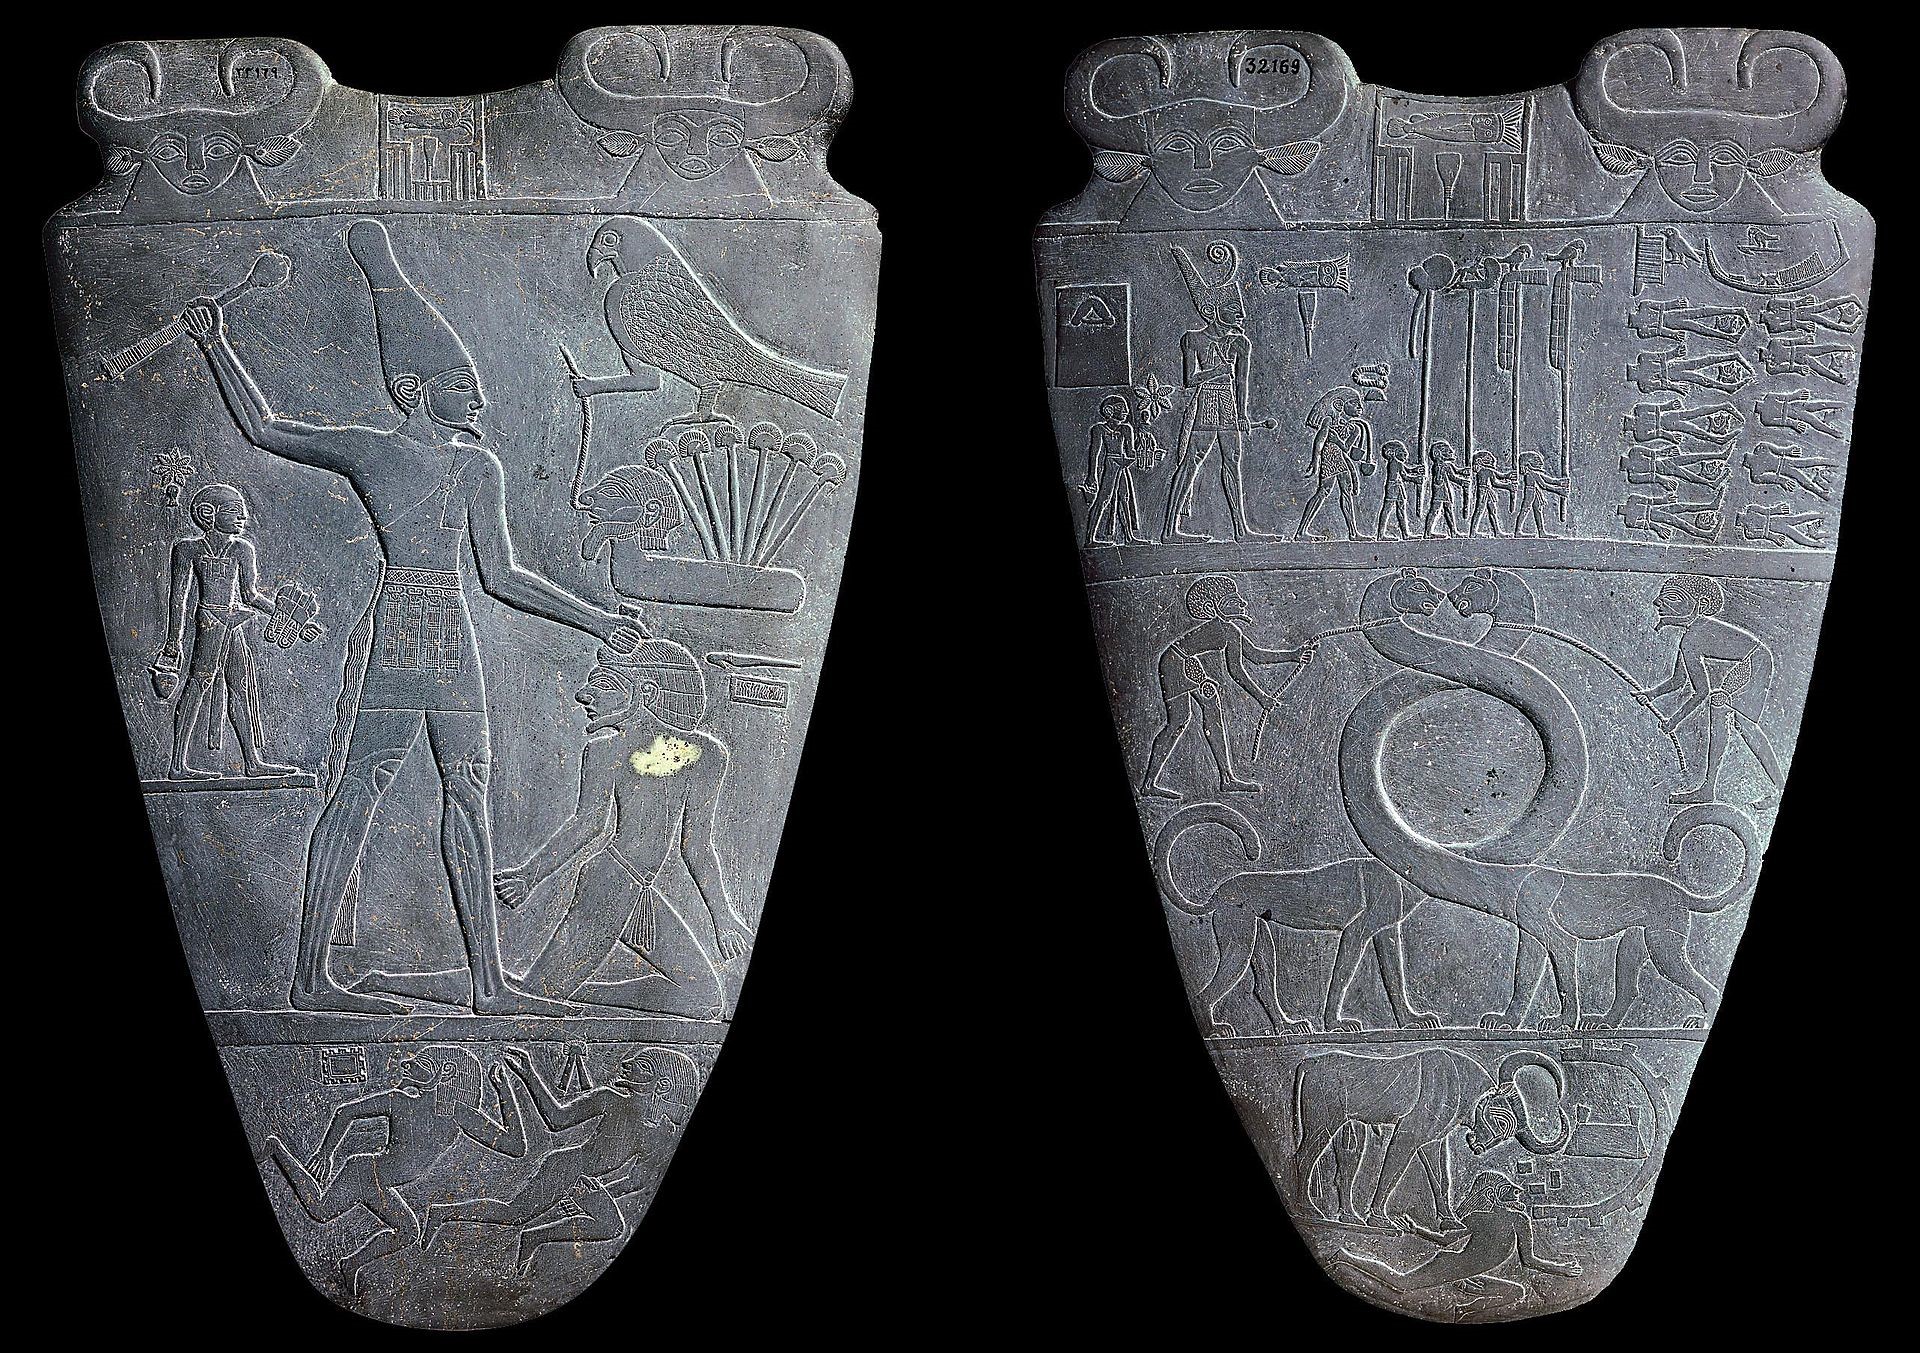 納爾邁·帕萊特(Narmer Palette)提供了歷史上已知的最早的國王描繪 之一，其展示著納爾邁戴著上埃及的王冠，迫使下埃及人向他投降，手 裡拿著狼牙棒的畫面。早期王朝的國王並沒有簡單地繼承現成的國家; 他們不得不通過武力結成一體。//圖片來源：公共領域